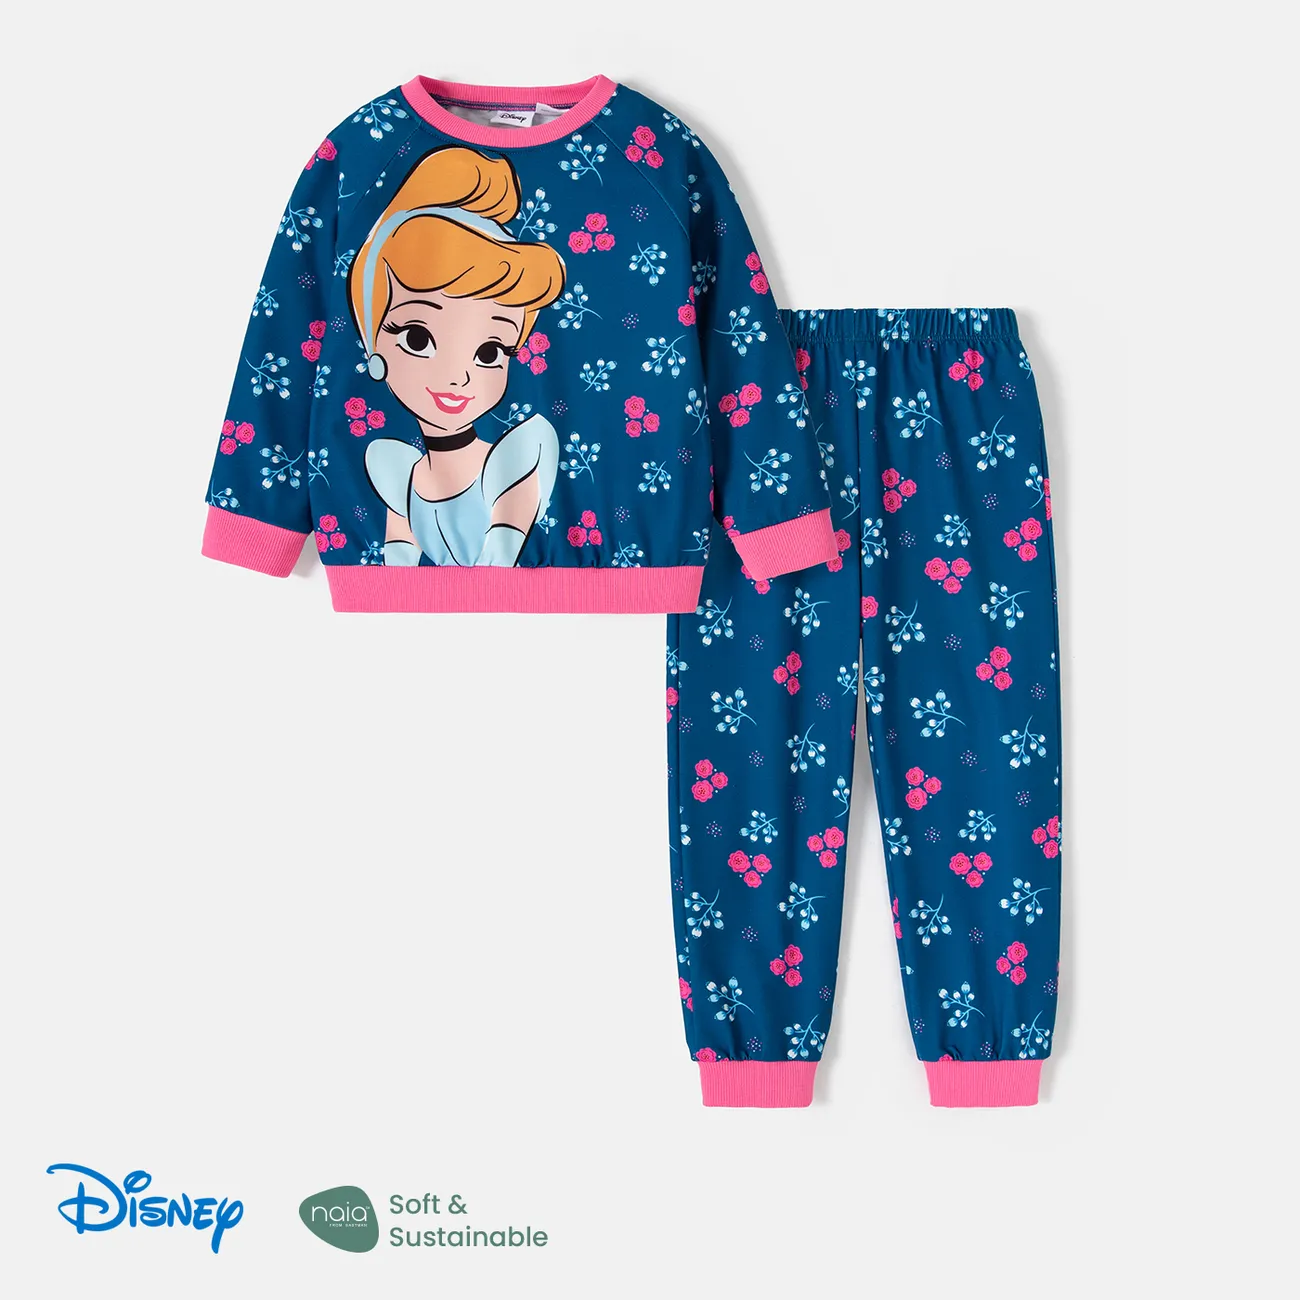 Disney Princess Toddler Girl 2pcs Naia™ Character & Floral Print Long-sleeve Pullover Sweatshirt and Pants Set   big image 1